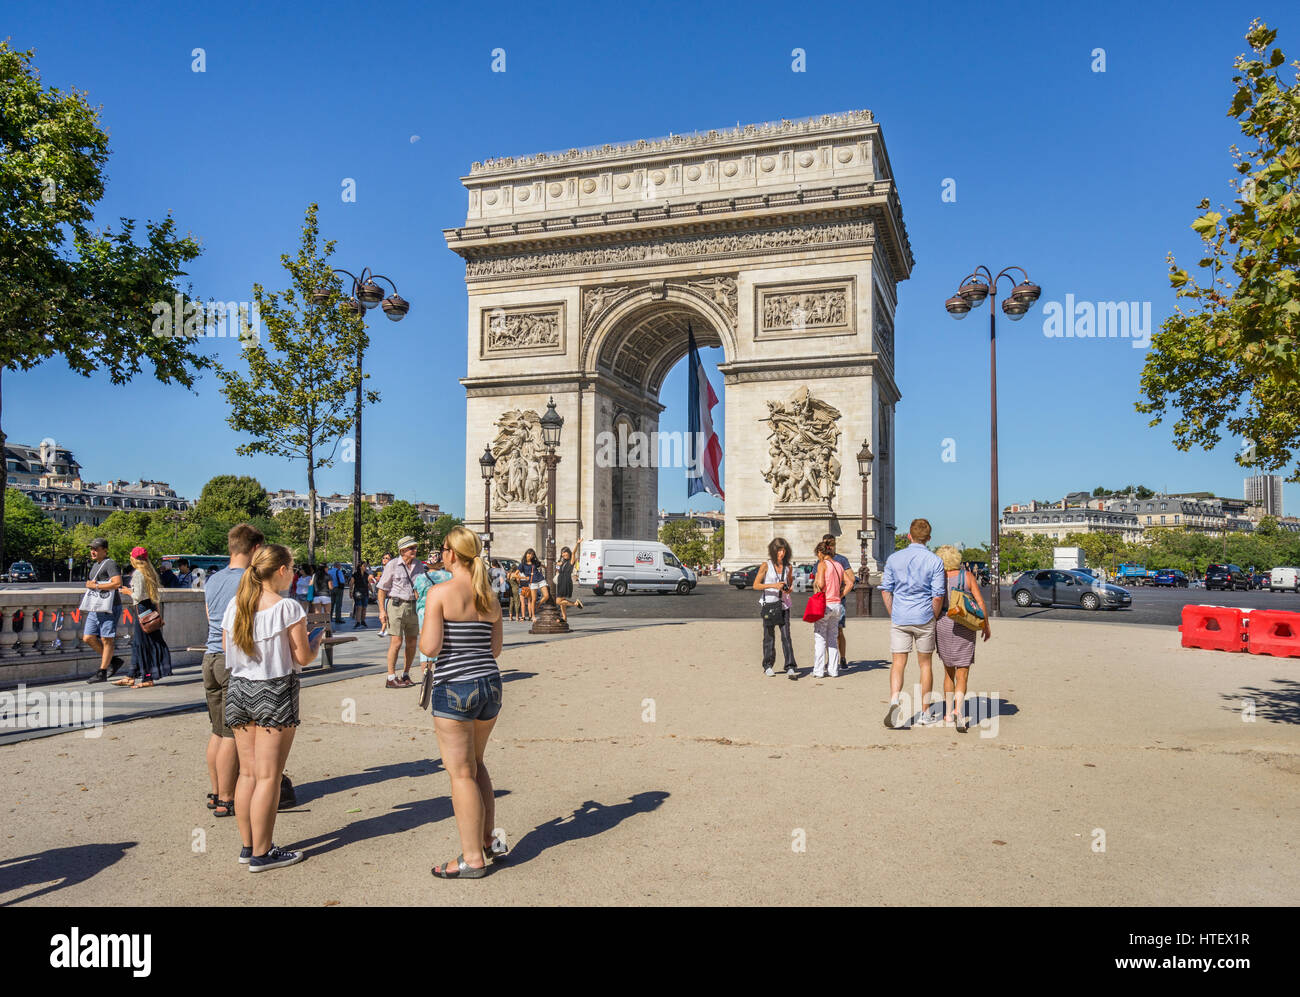 France, Ile-de-France, Paris, Arc de Triomphe de l'Étoile vu de Champs Elysées Banque D'Images